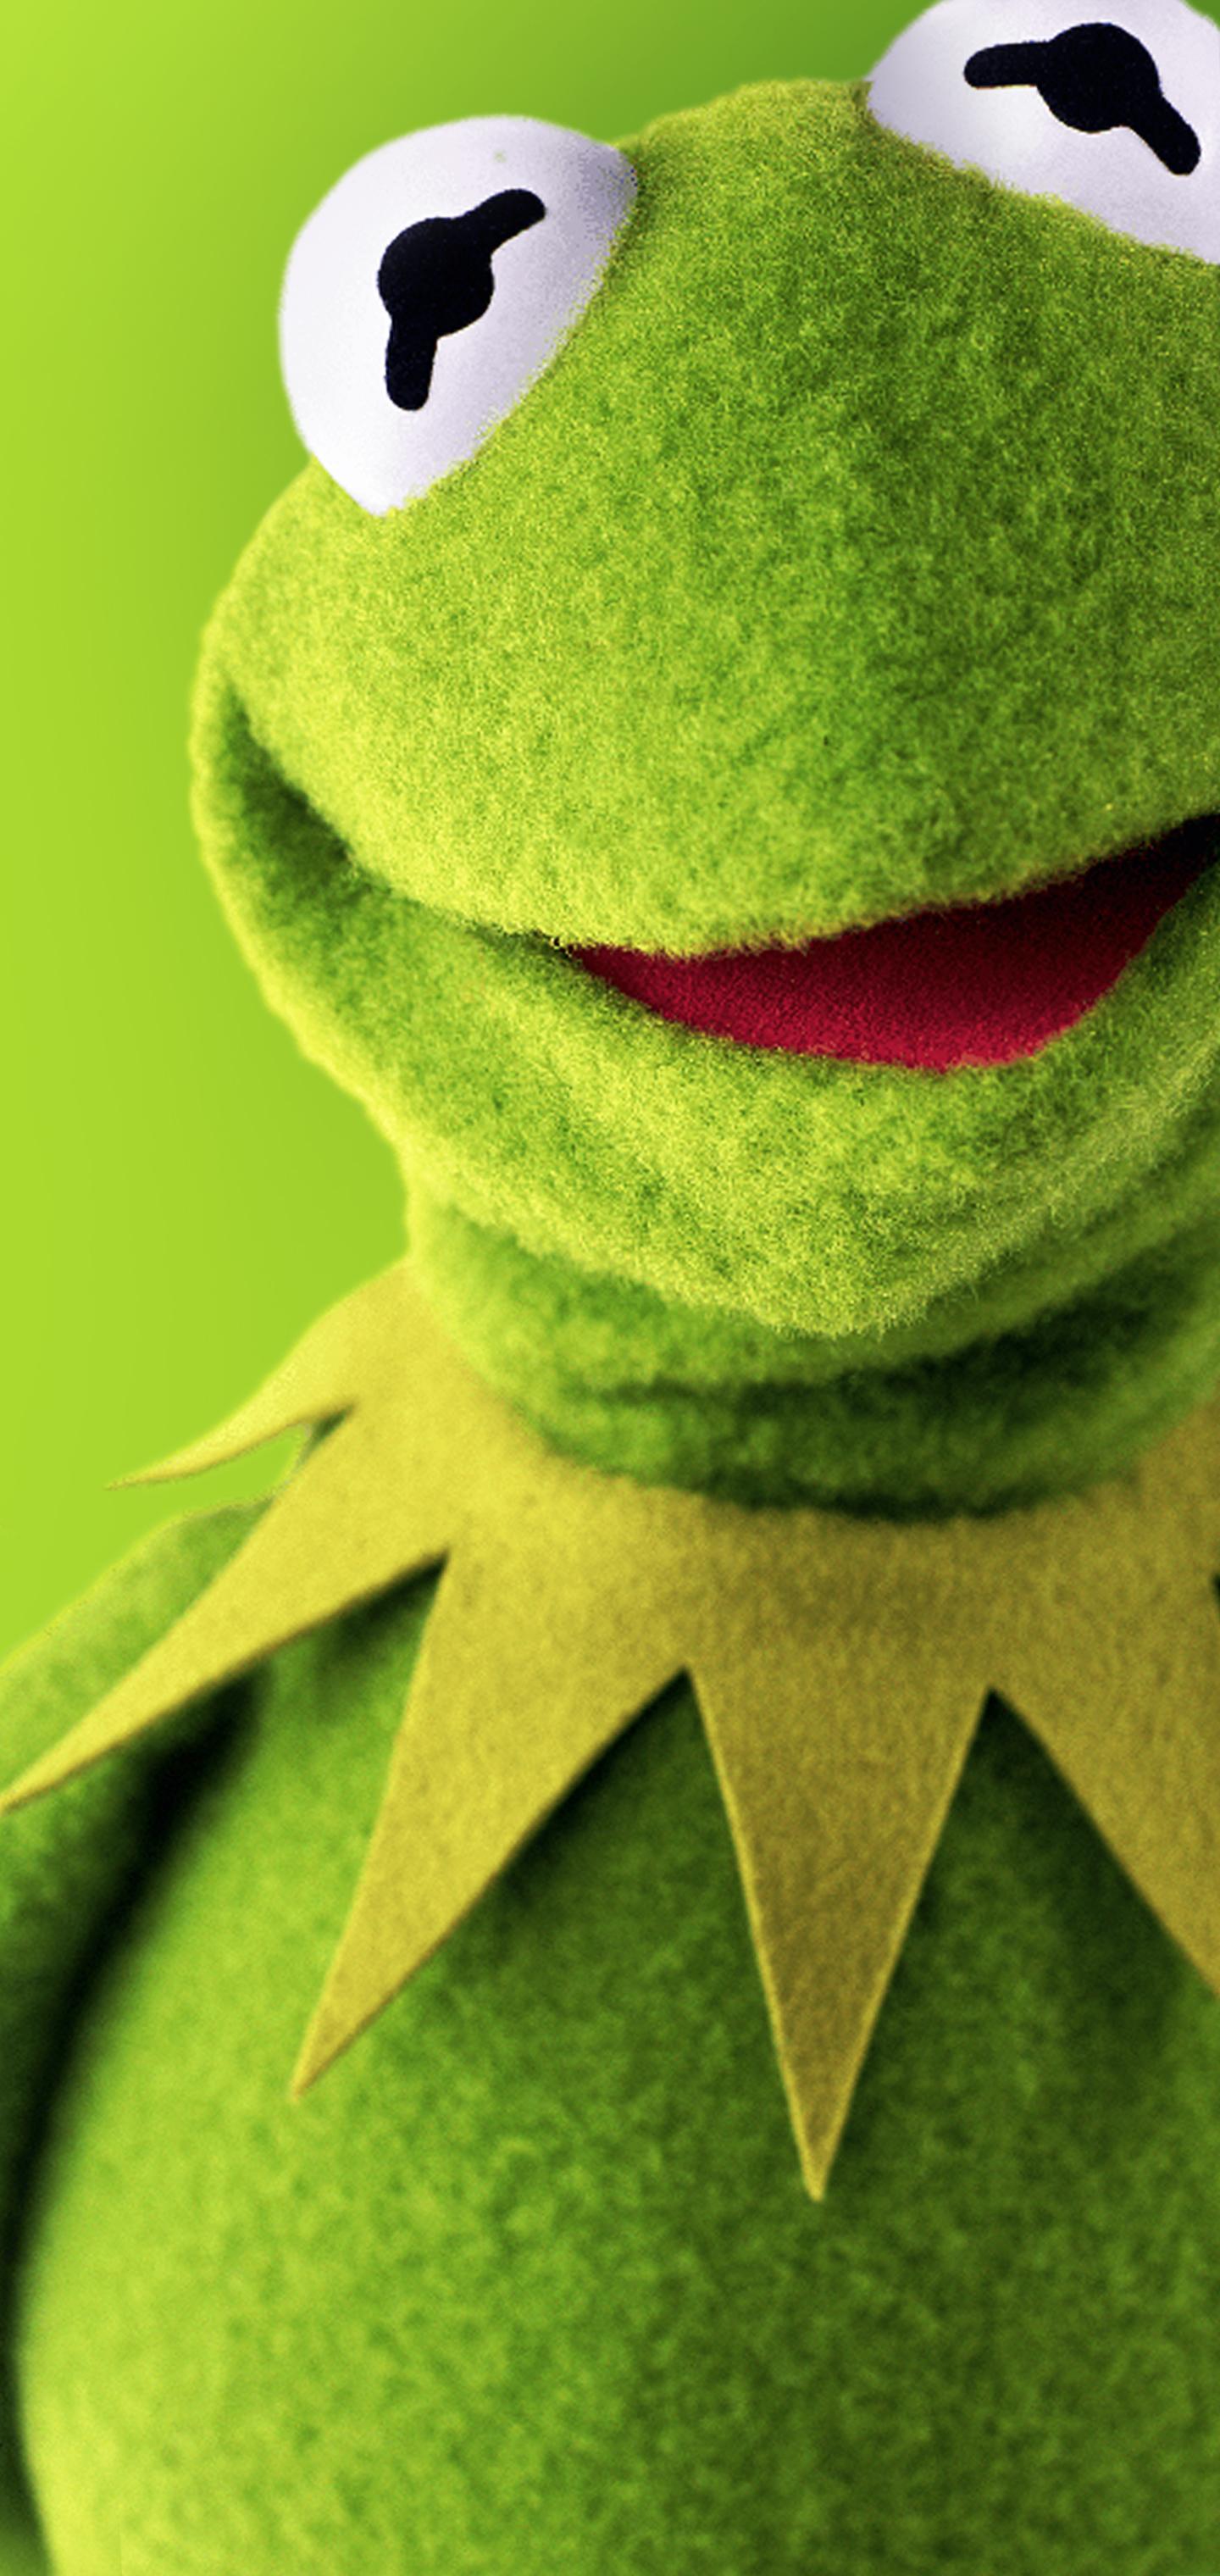 Ảnh nền Kermit (Kermit background): Bạn muốn tìm kiếm một bức ảnh nền độc đáo và mới lạ? Hãy khám phá ngay bộ ảnh nền Kermit với nhiều phong cách khác nhau, từ đơn giản đến phức tạp. Hãy để Kermit là đại diện cho phong cách và sự thú vị của bạn.